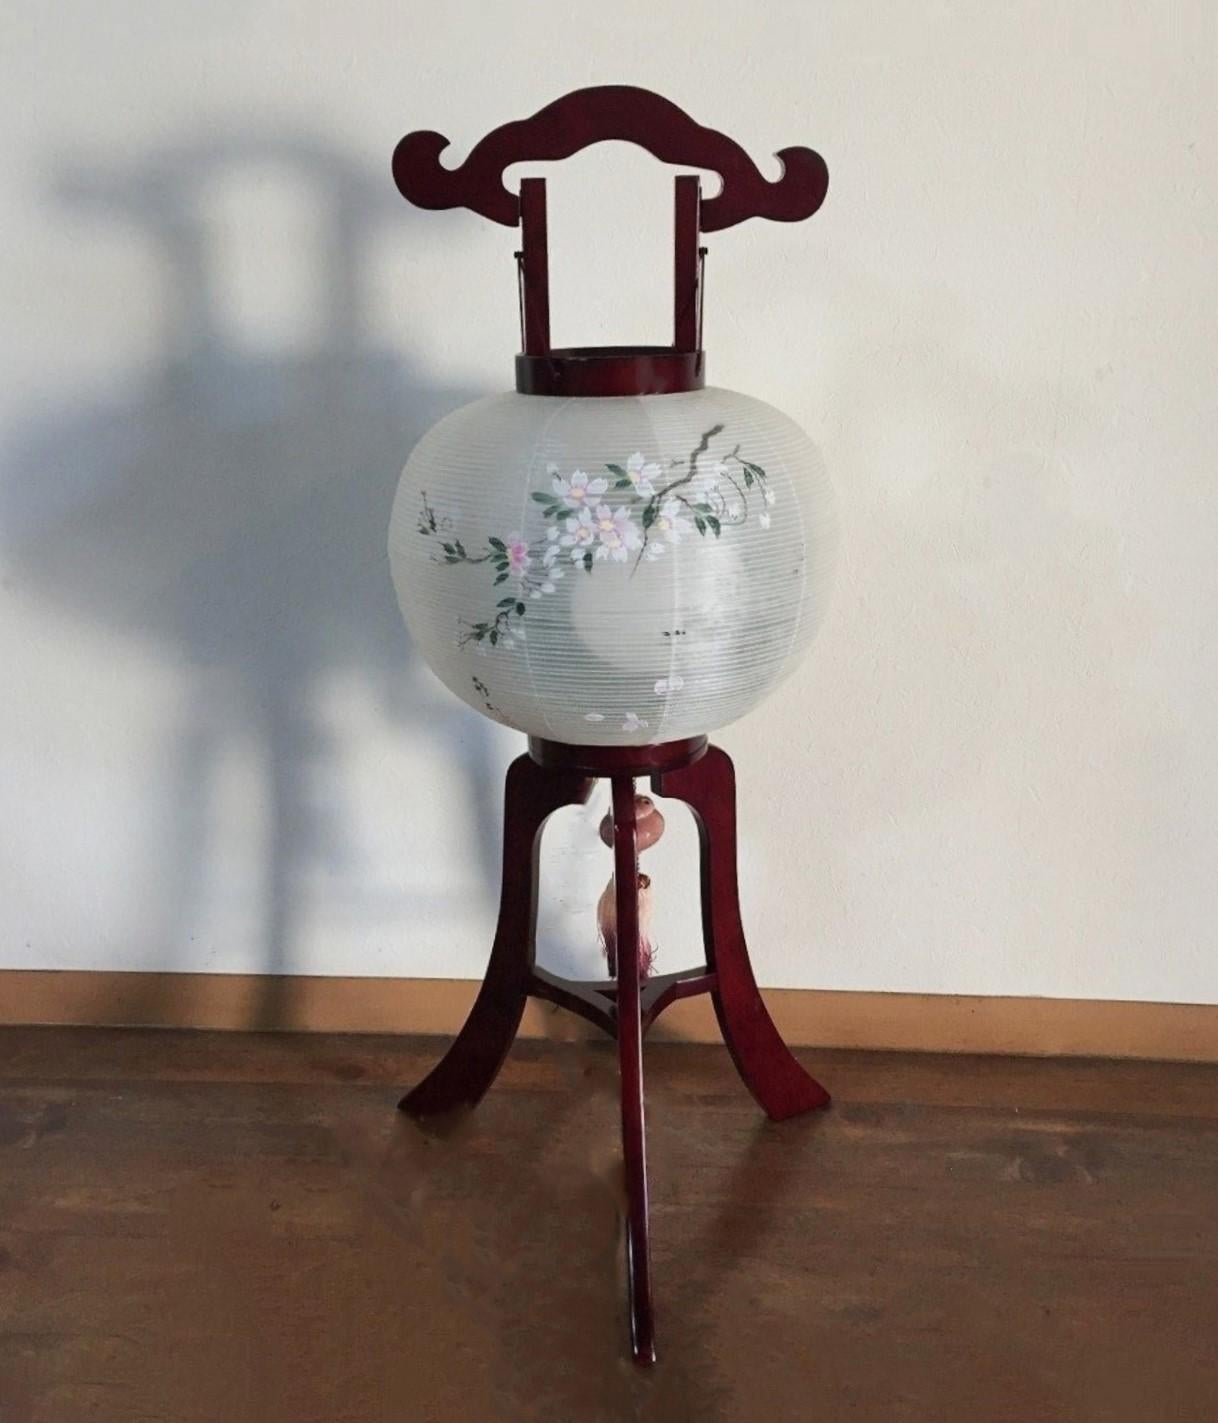 Lanterna o lampada da terra buddista giapponese vintage Chochin di SUZUKI ANDON, Giappone, 1980-1990. Supporto a tre gambe in legno laccato con lanterna in seta dipinta a mano, firmato dall'artista: 政和 MASAKAZU. 
Queste lanterne Chochin vengono